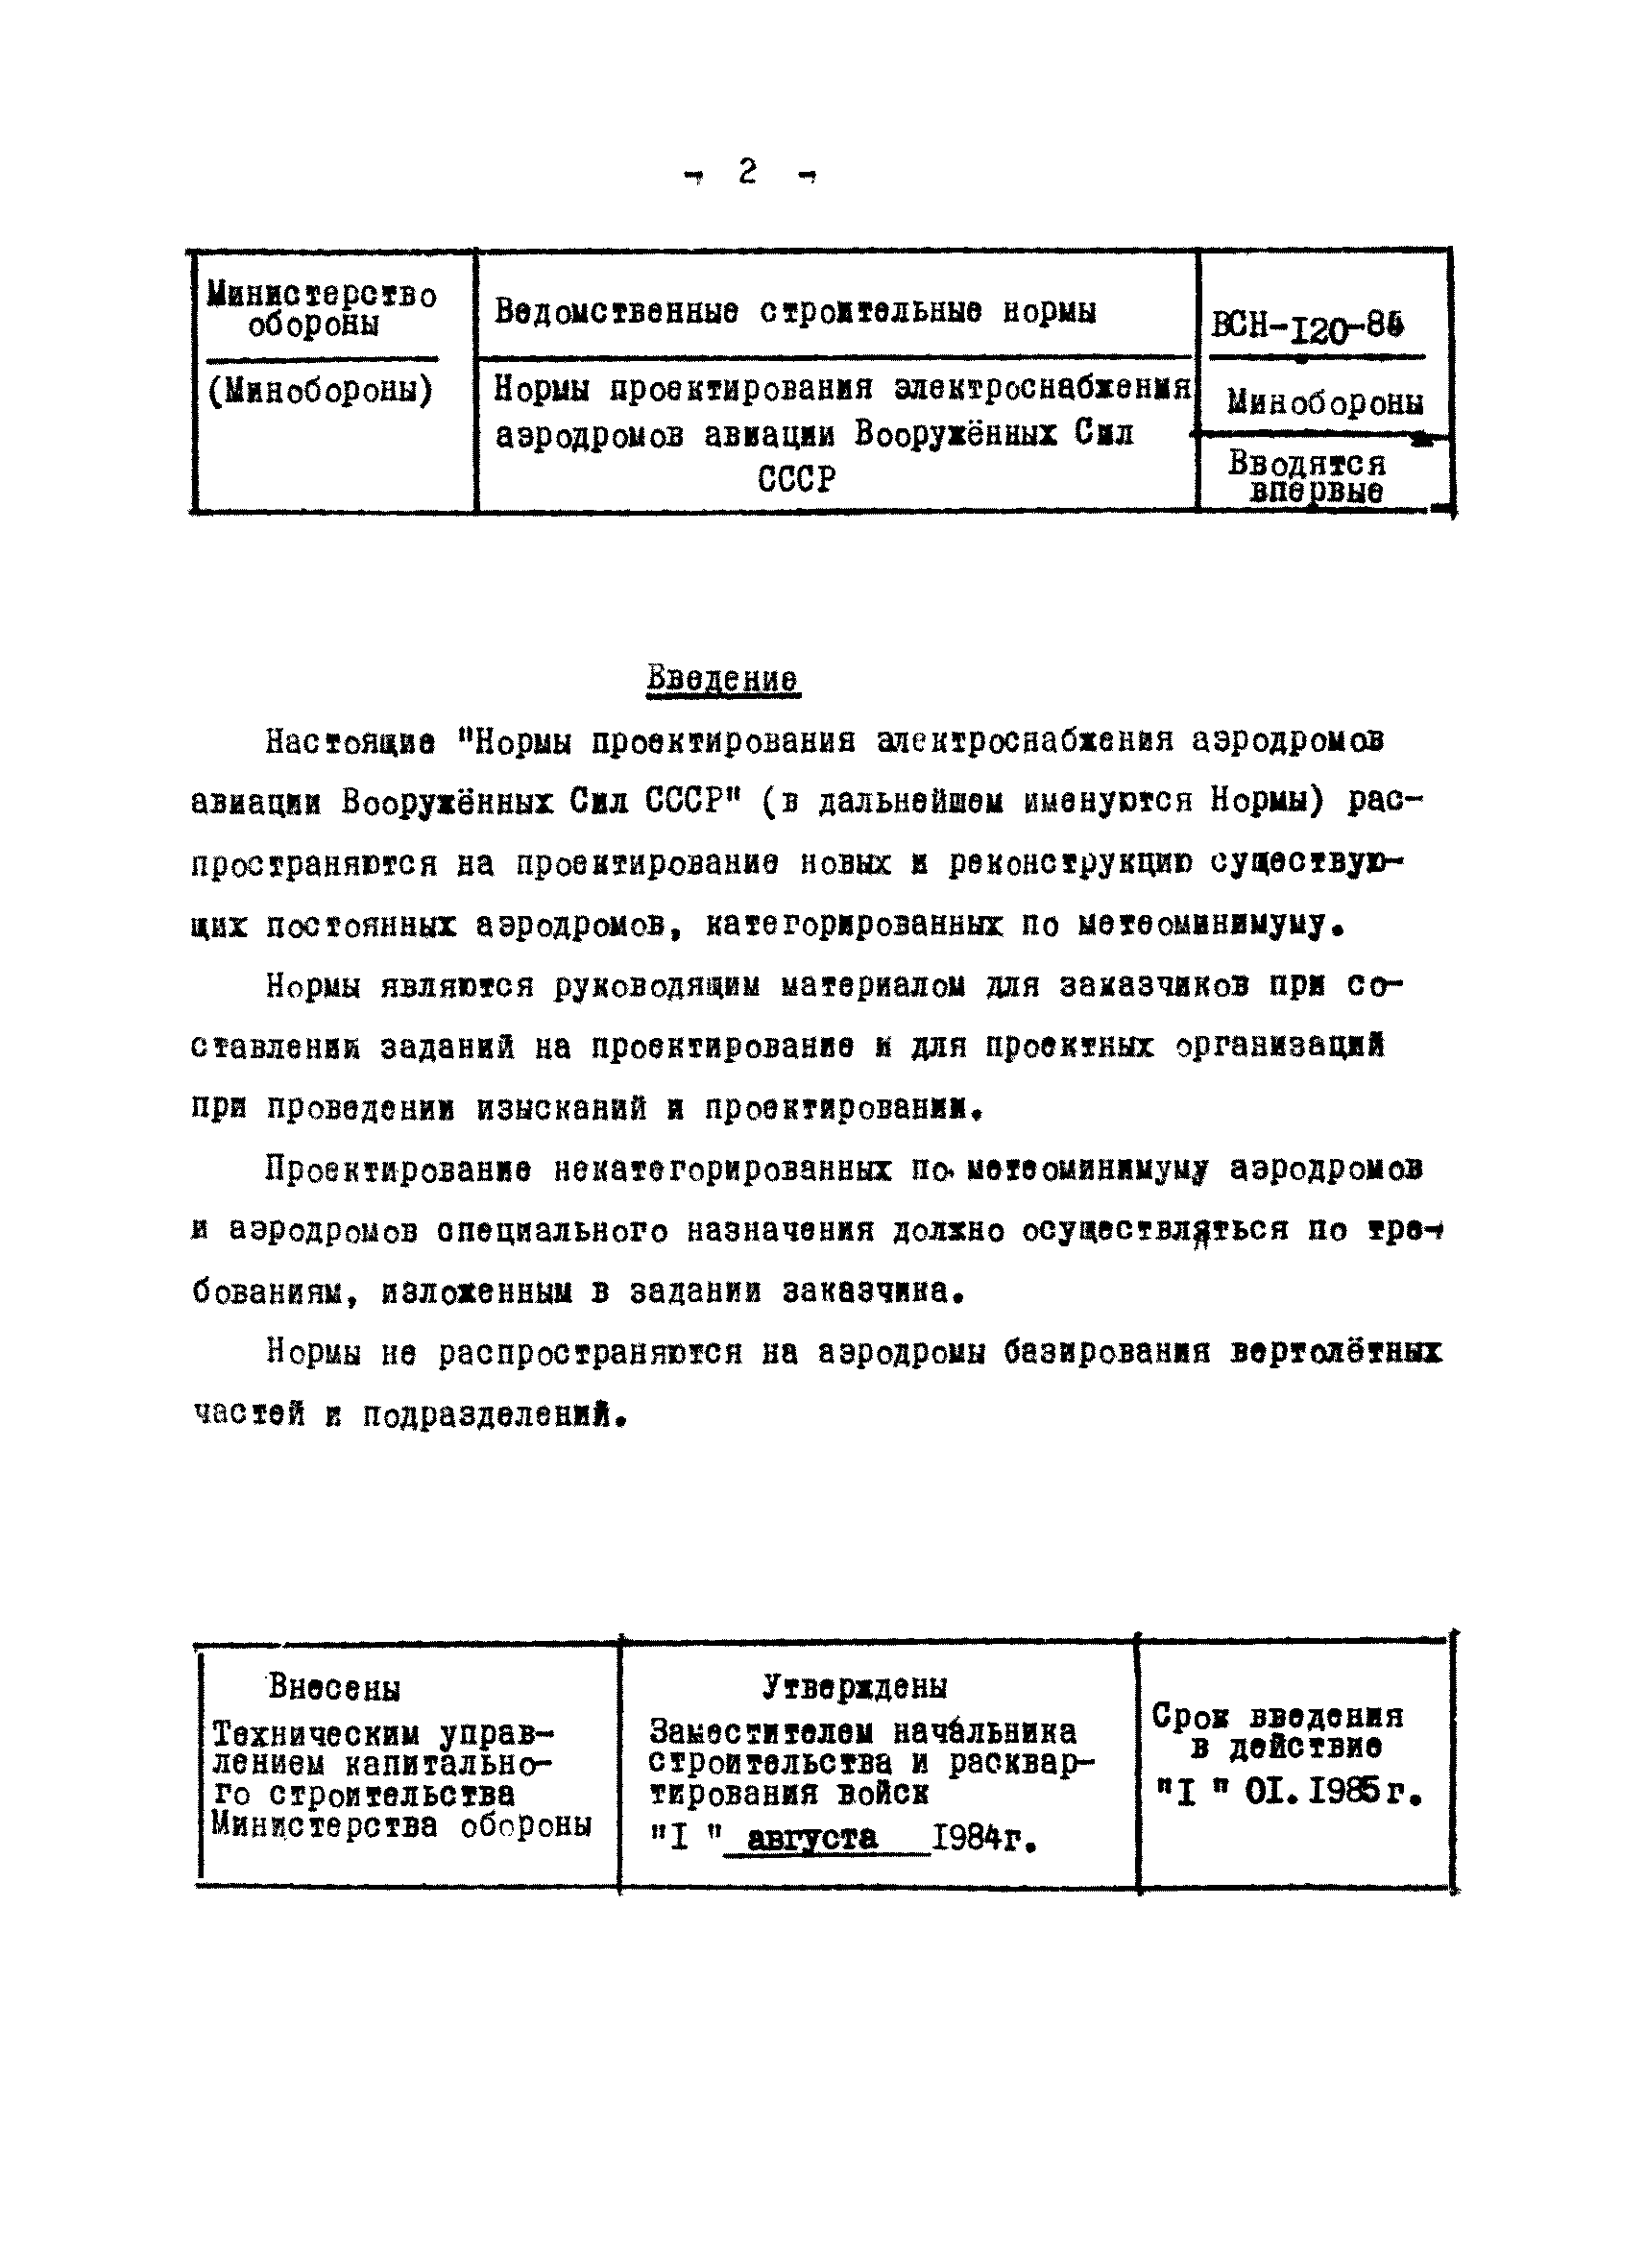 ВСН 120-84/Минобороны